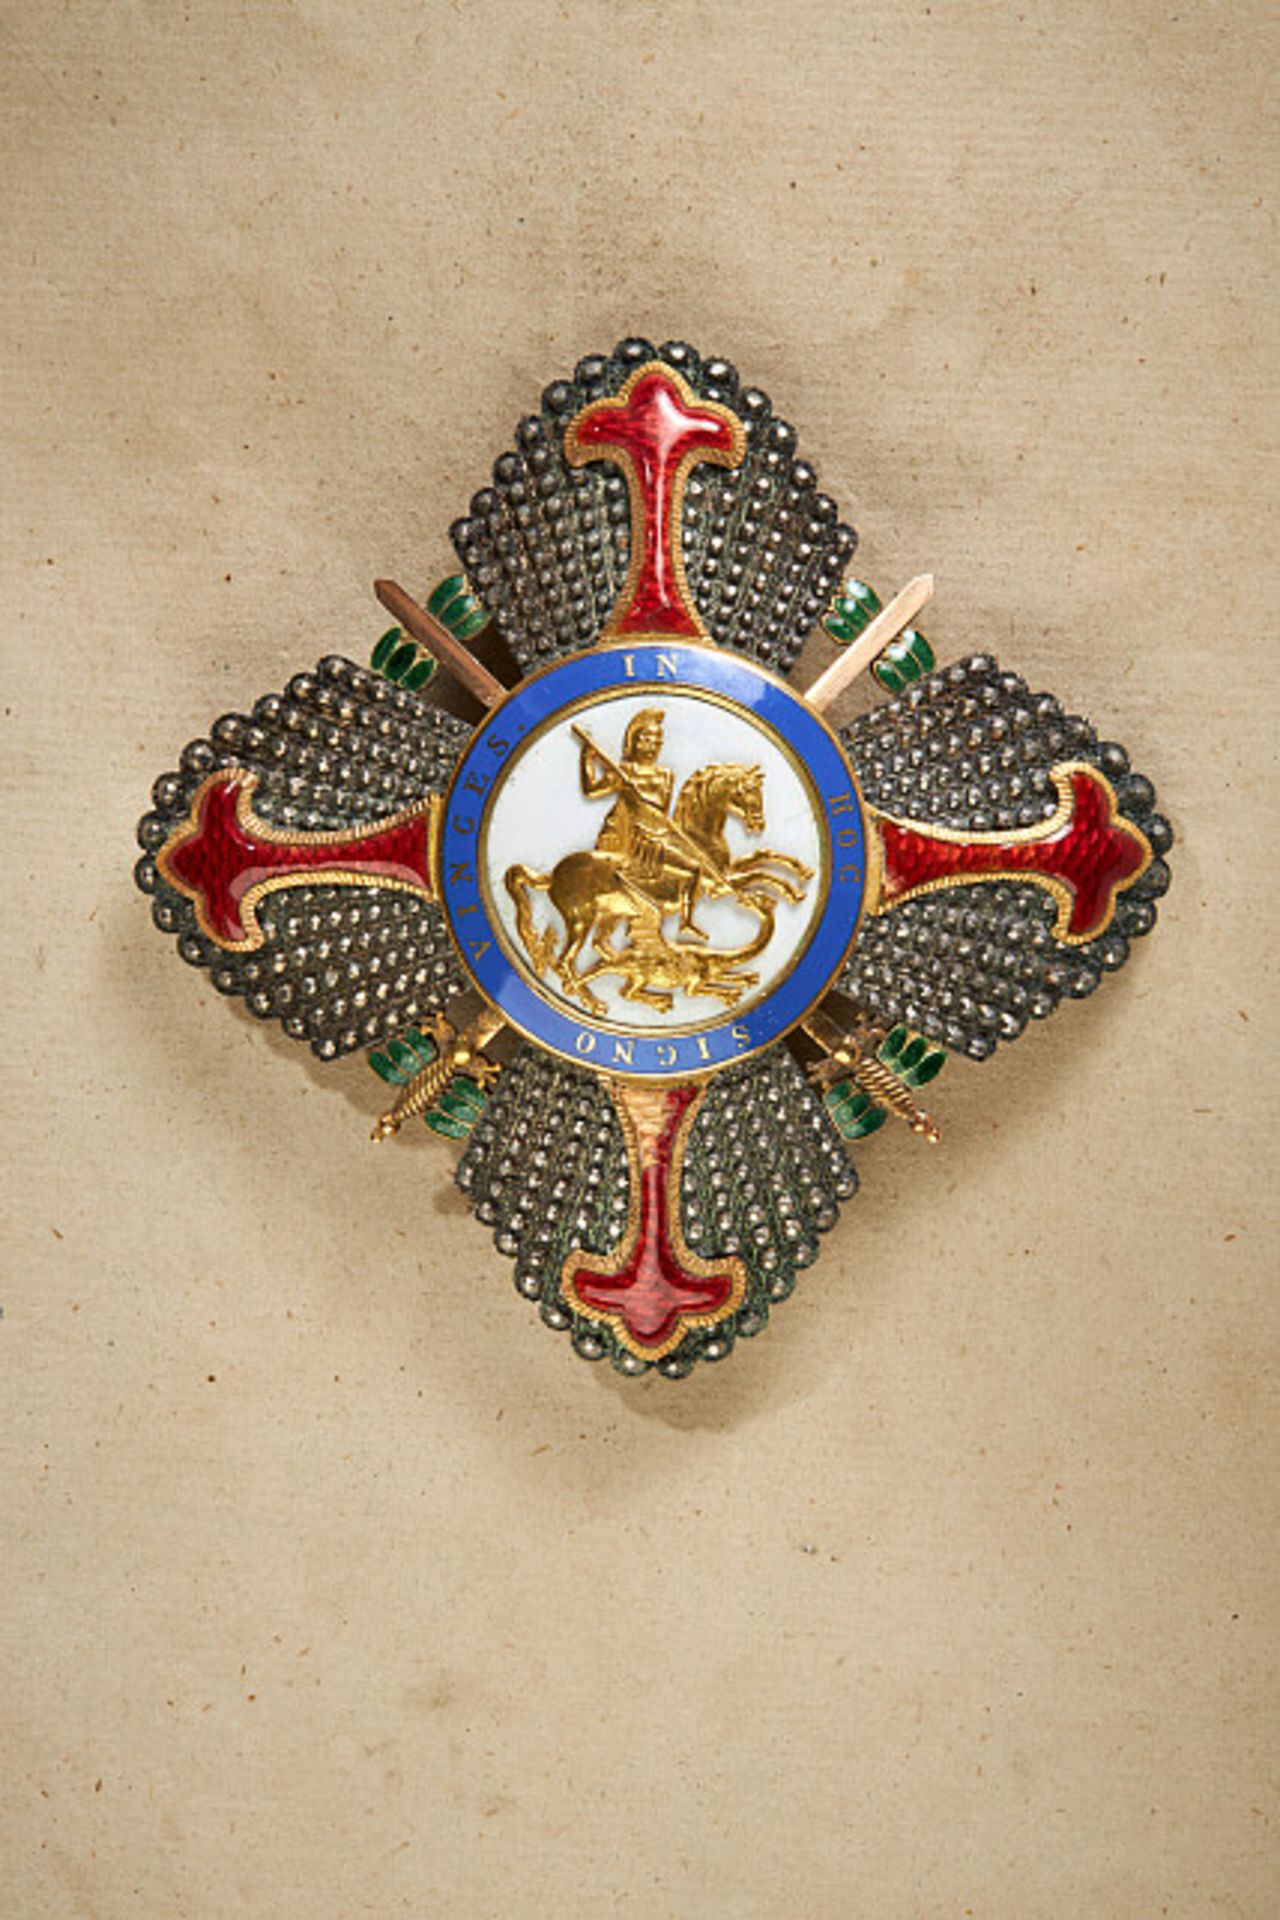 Ausländische Orden & Ehrenzeichen - Königreich beider Sizilien : Bruststern zum Großkreuz.Silber, - Bild 3 aus 3